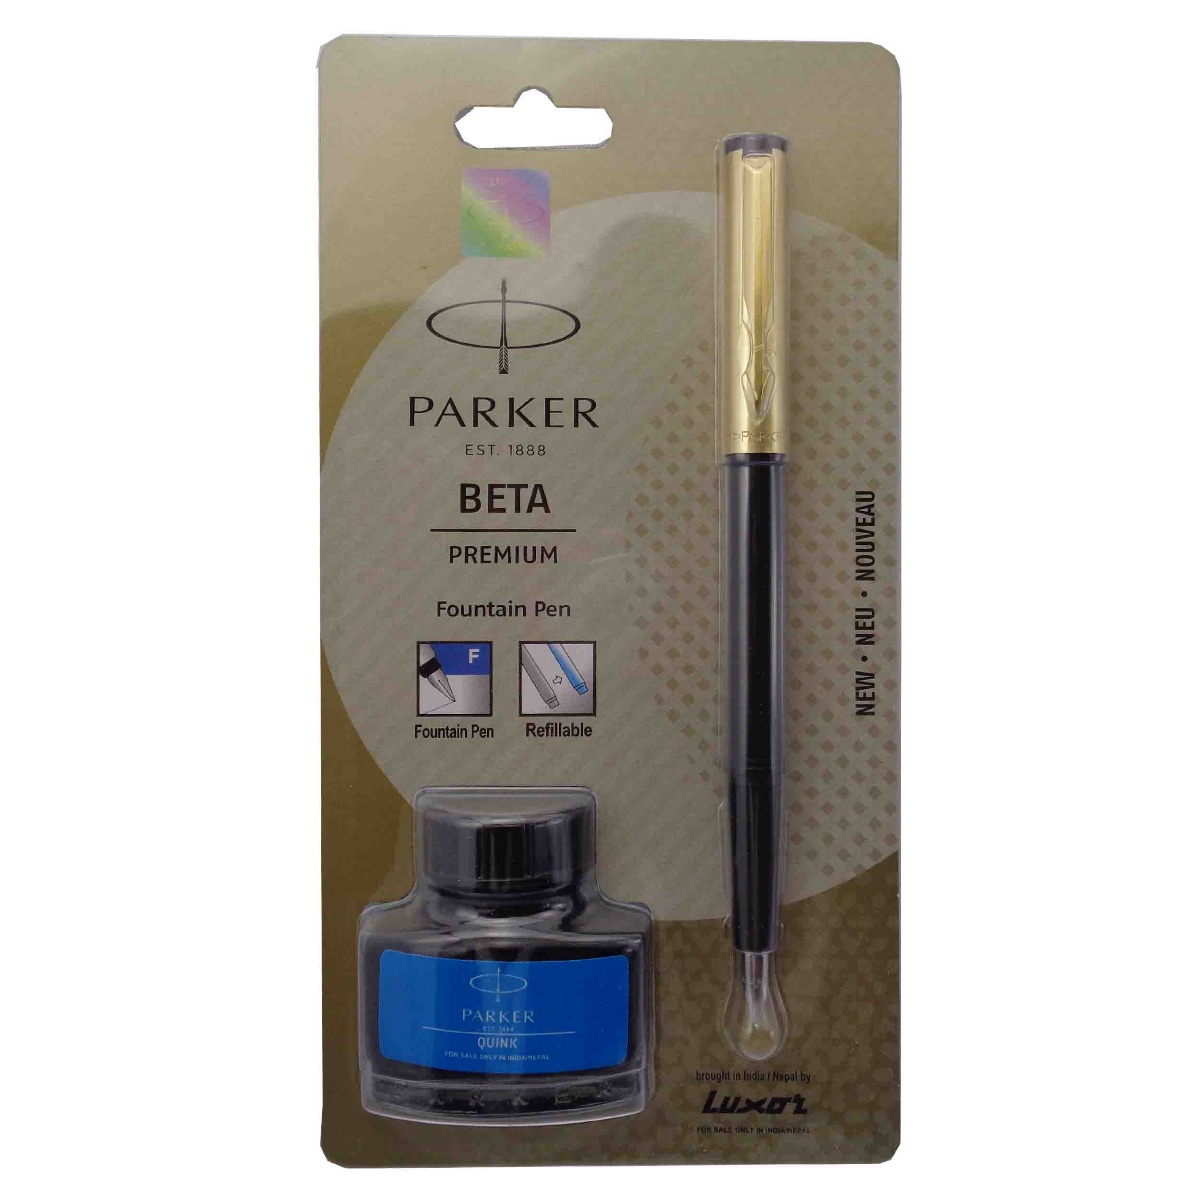 Parker Model: 15484 Beta premium Black color body with Golden color cap GT fine tip cap type fountain pen